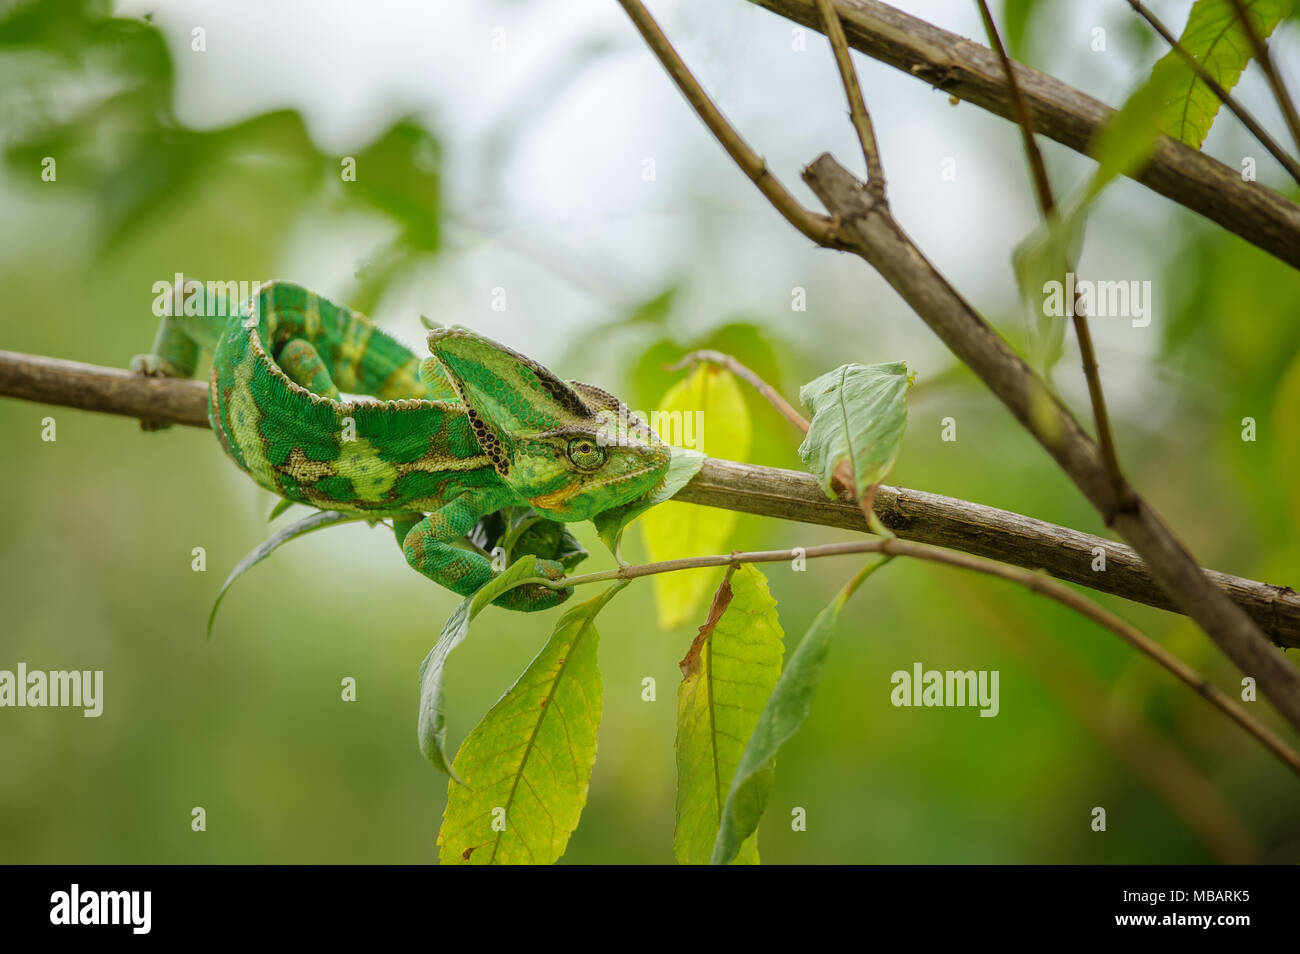 El camaleón verde y amarillo desde la parte frontal vista superior en la rama de árbol Foto de stock